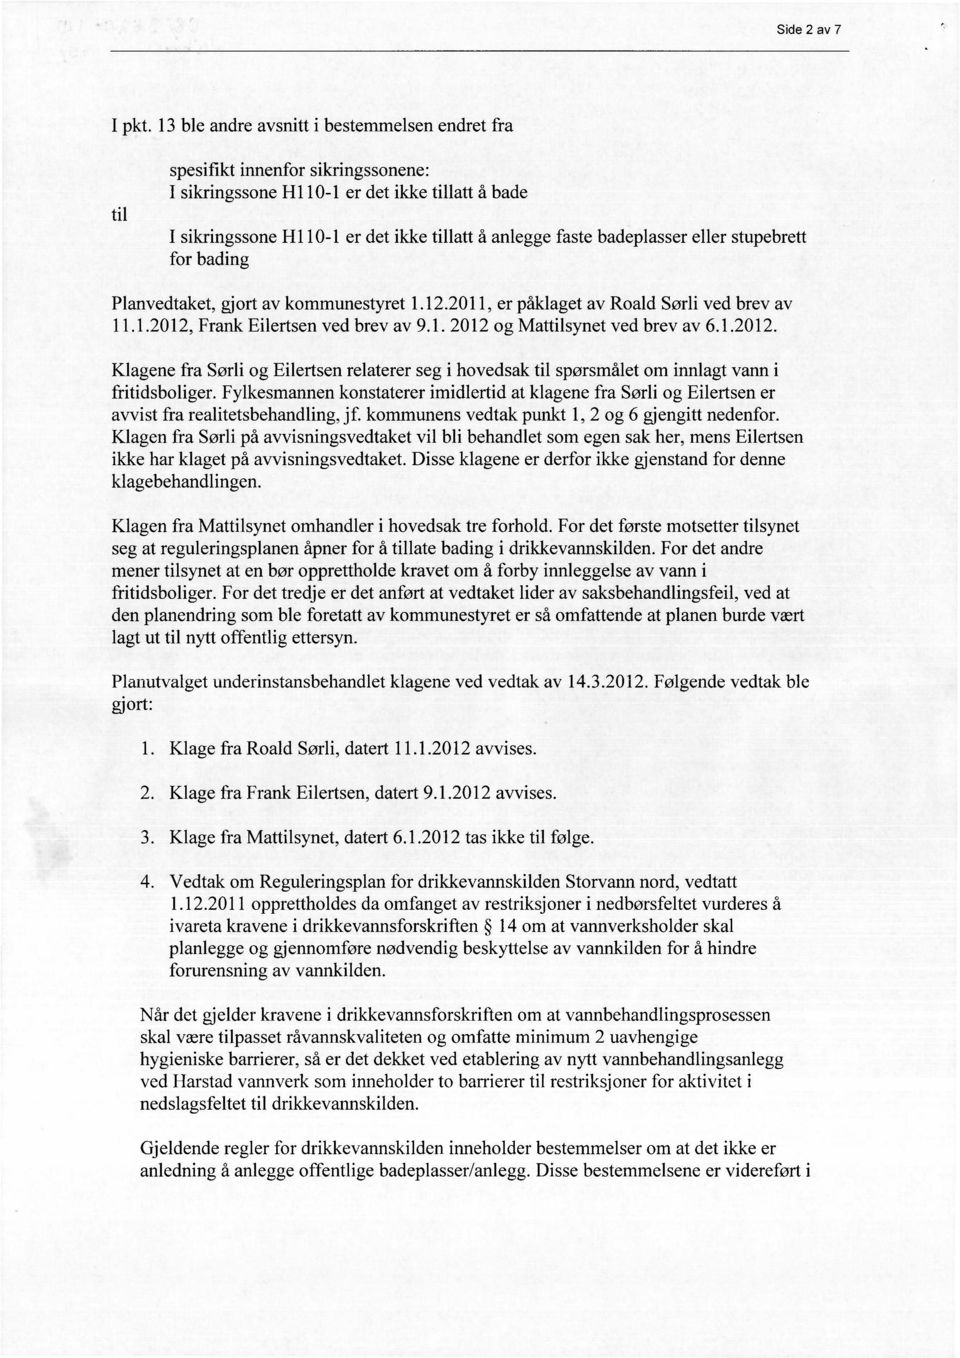 badeplasser eller stupebrett for bading Planvedtaket, gjort av kommunestyret 1.12.2011, er påklaget av Roald Sørli ved brev av 11.1.2012, Frank Eilertsen ved brev av 9.1. 2012 og Mattilsynet ved brev av 6.